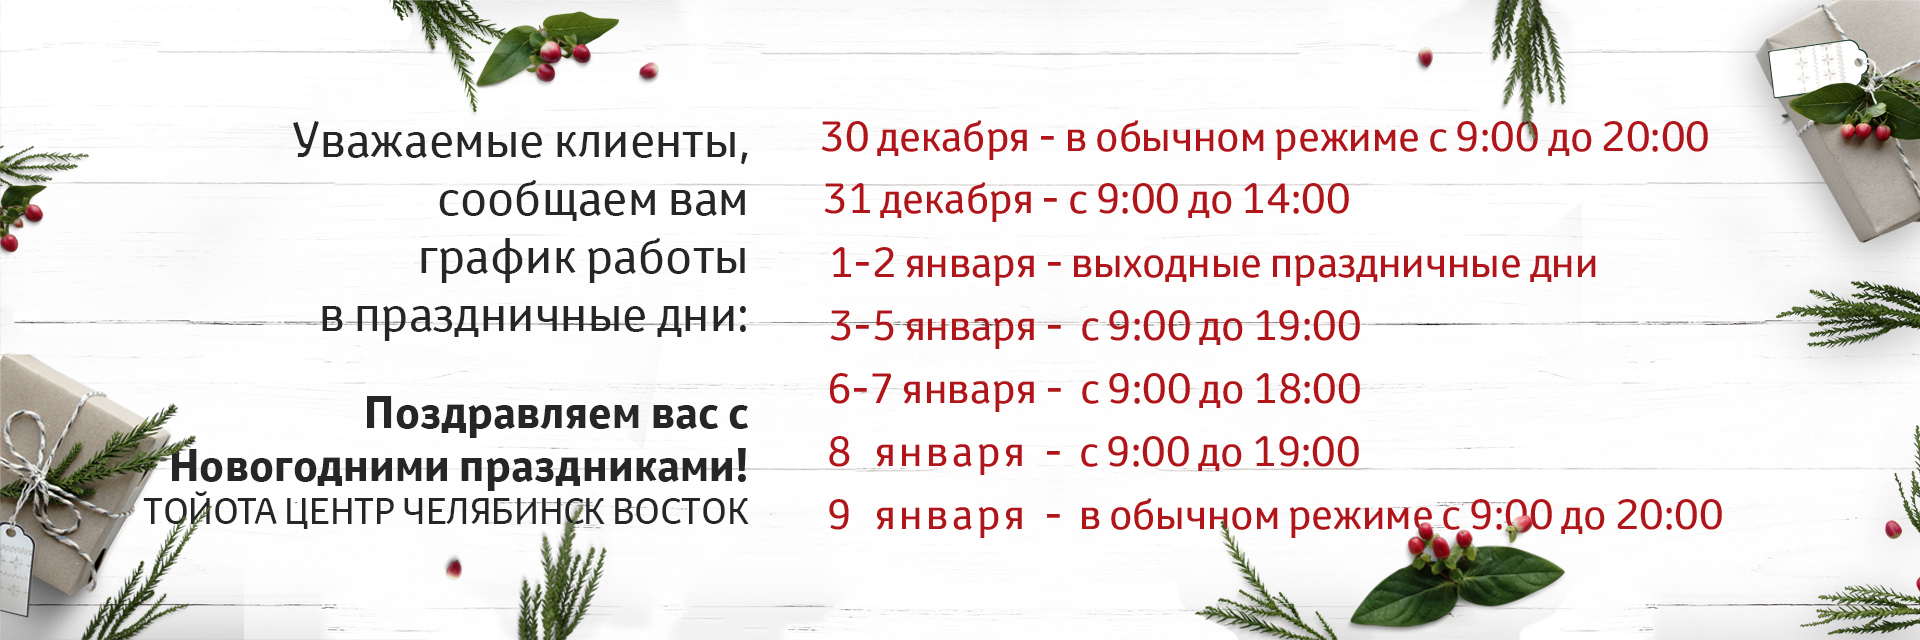 Работает ли вб 23. Режим работы автоцентра на новогодние праздники. Работают ли автосалоны 31 декабря. Работают ли адвокаты в новогодние праздники Воронеж.